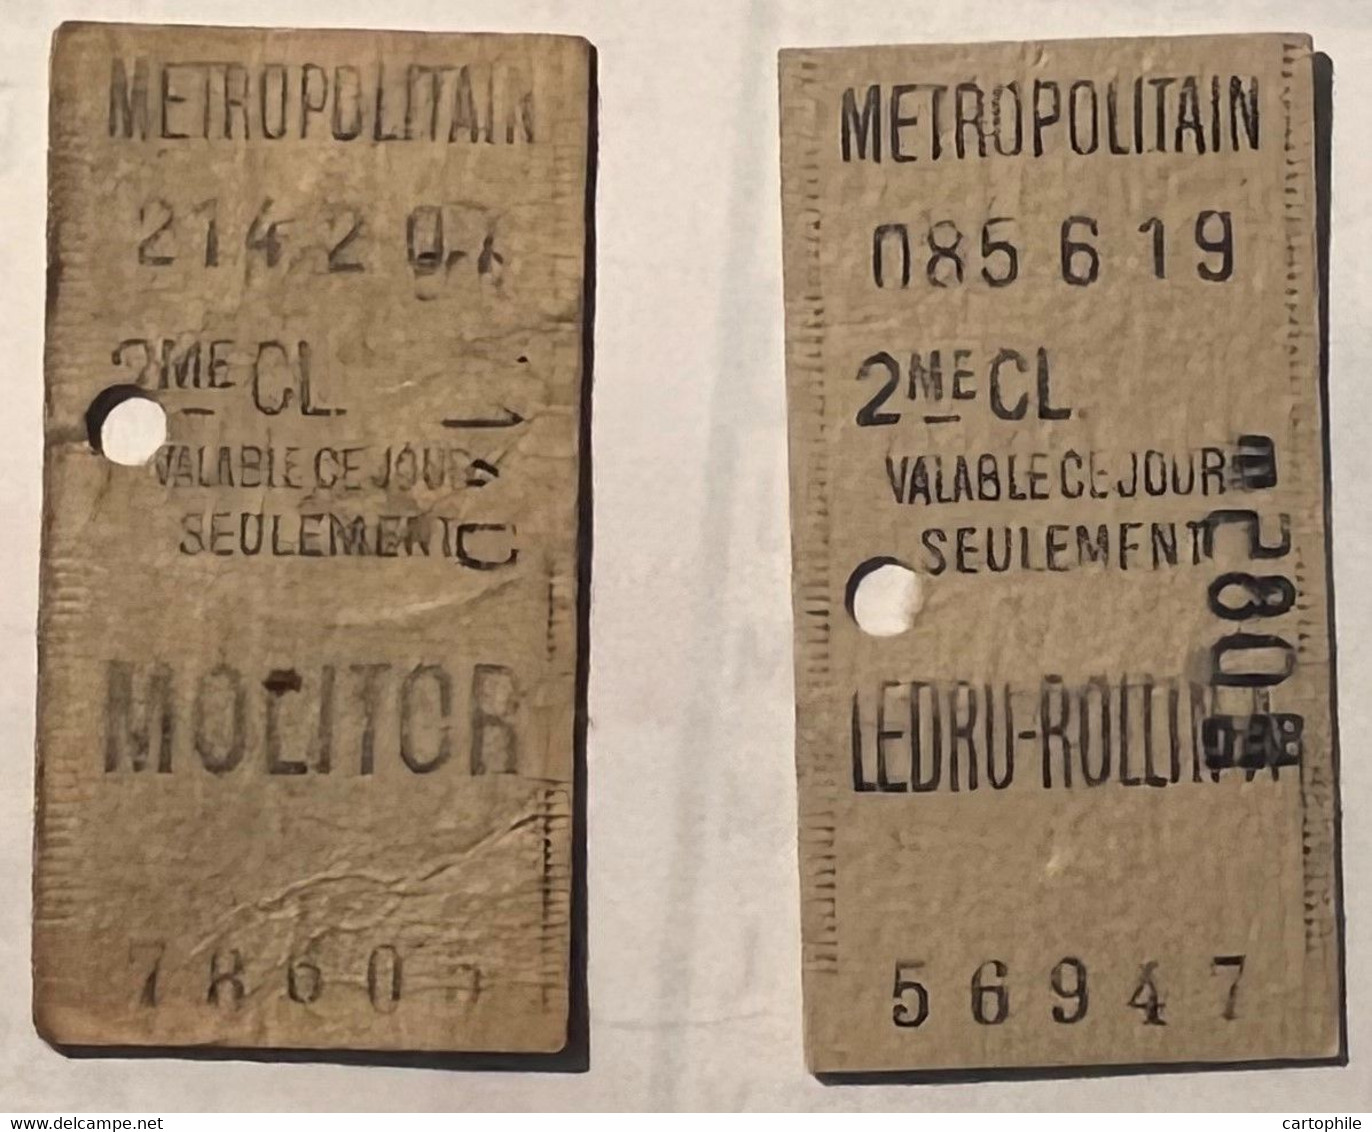 Metropolitain De Paris - Lot De 2 Tickets Simple 2e Classe - Station Ledru-Rollin Et Molitor - Usagés - Europe